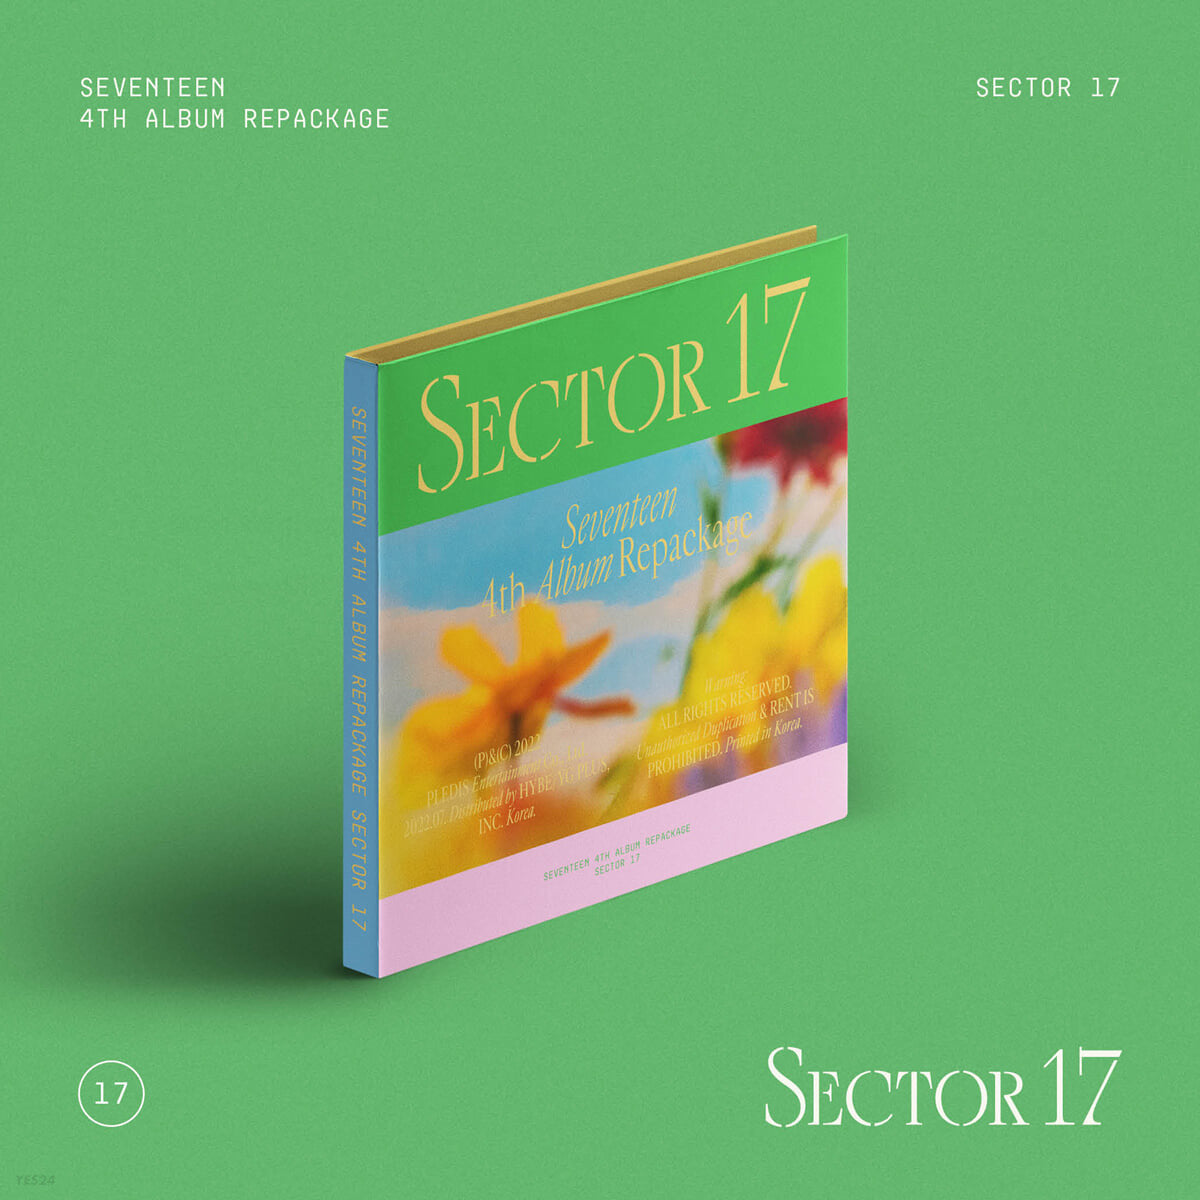 SEVENTEEN Sector 17 Compact Album